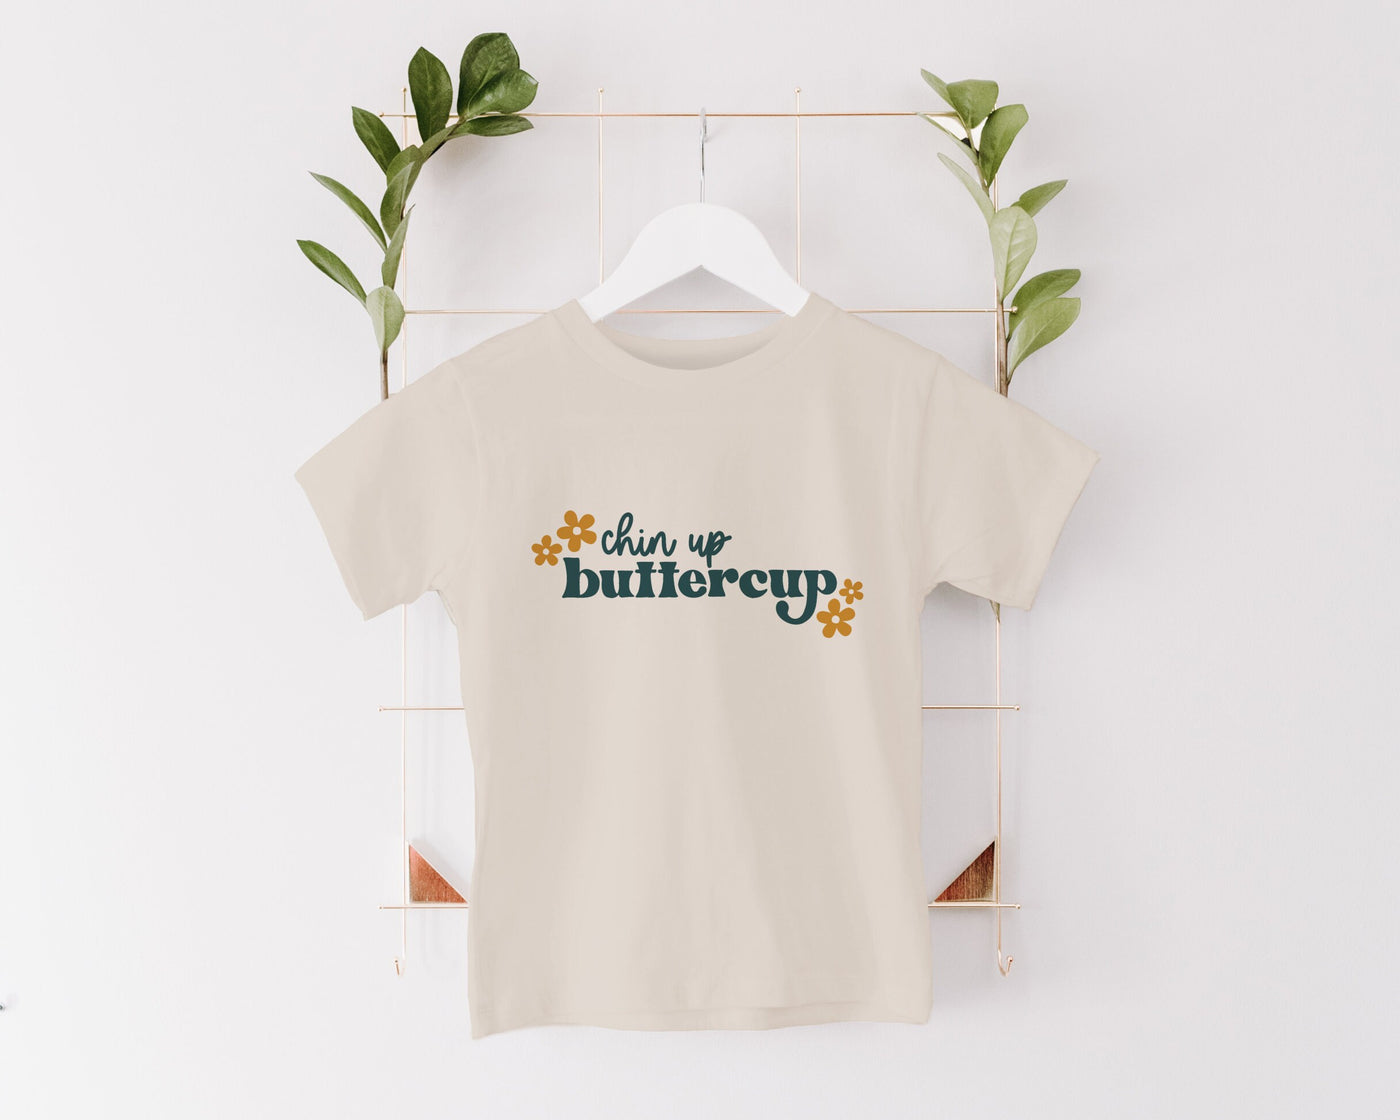 Buttercup Shirt, Chin Up Buttercup, Girls Spring Shirt, Retro Toddler Shirt, Cute Hippie Toddler Shirt, Boho Toddler Shirt, Cute Girls Shirt